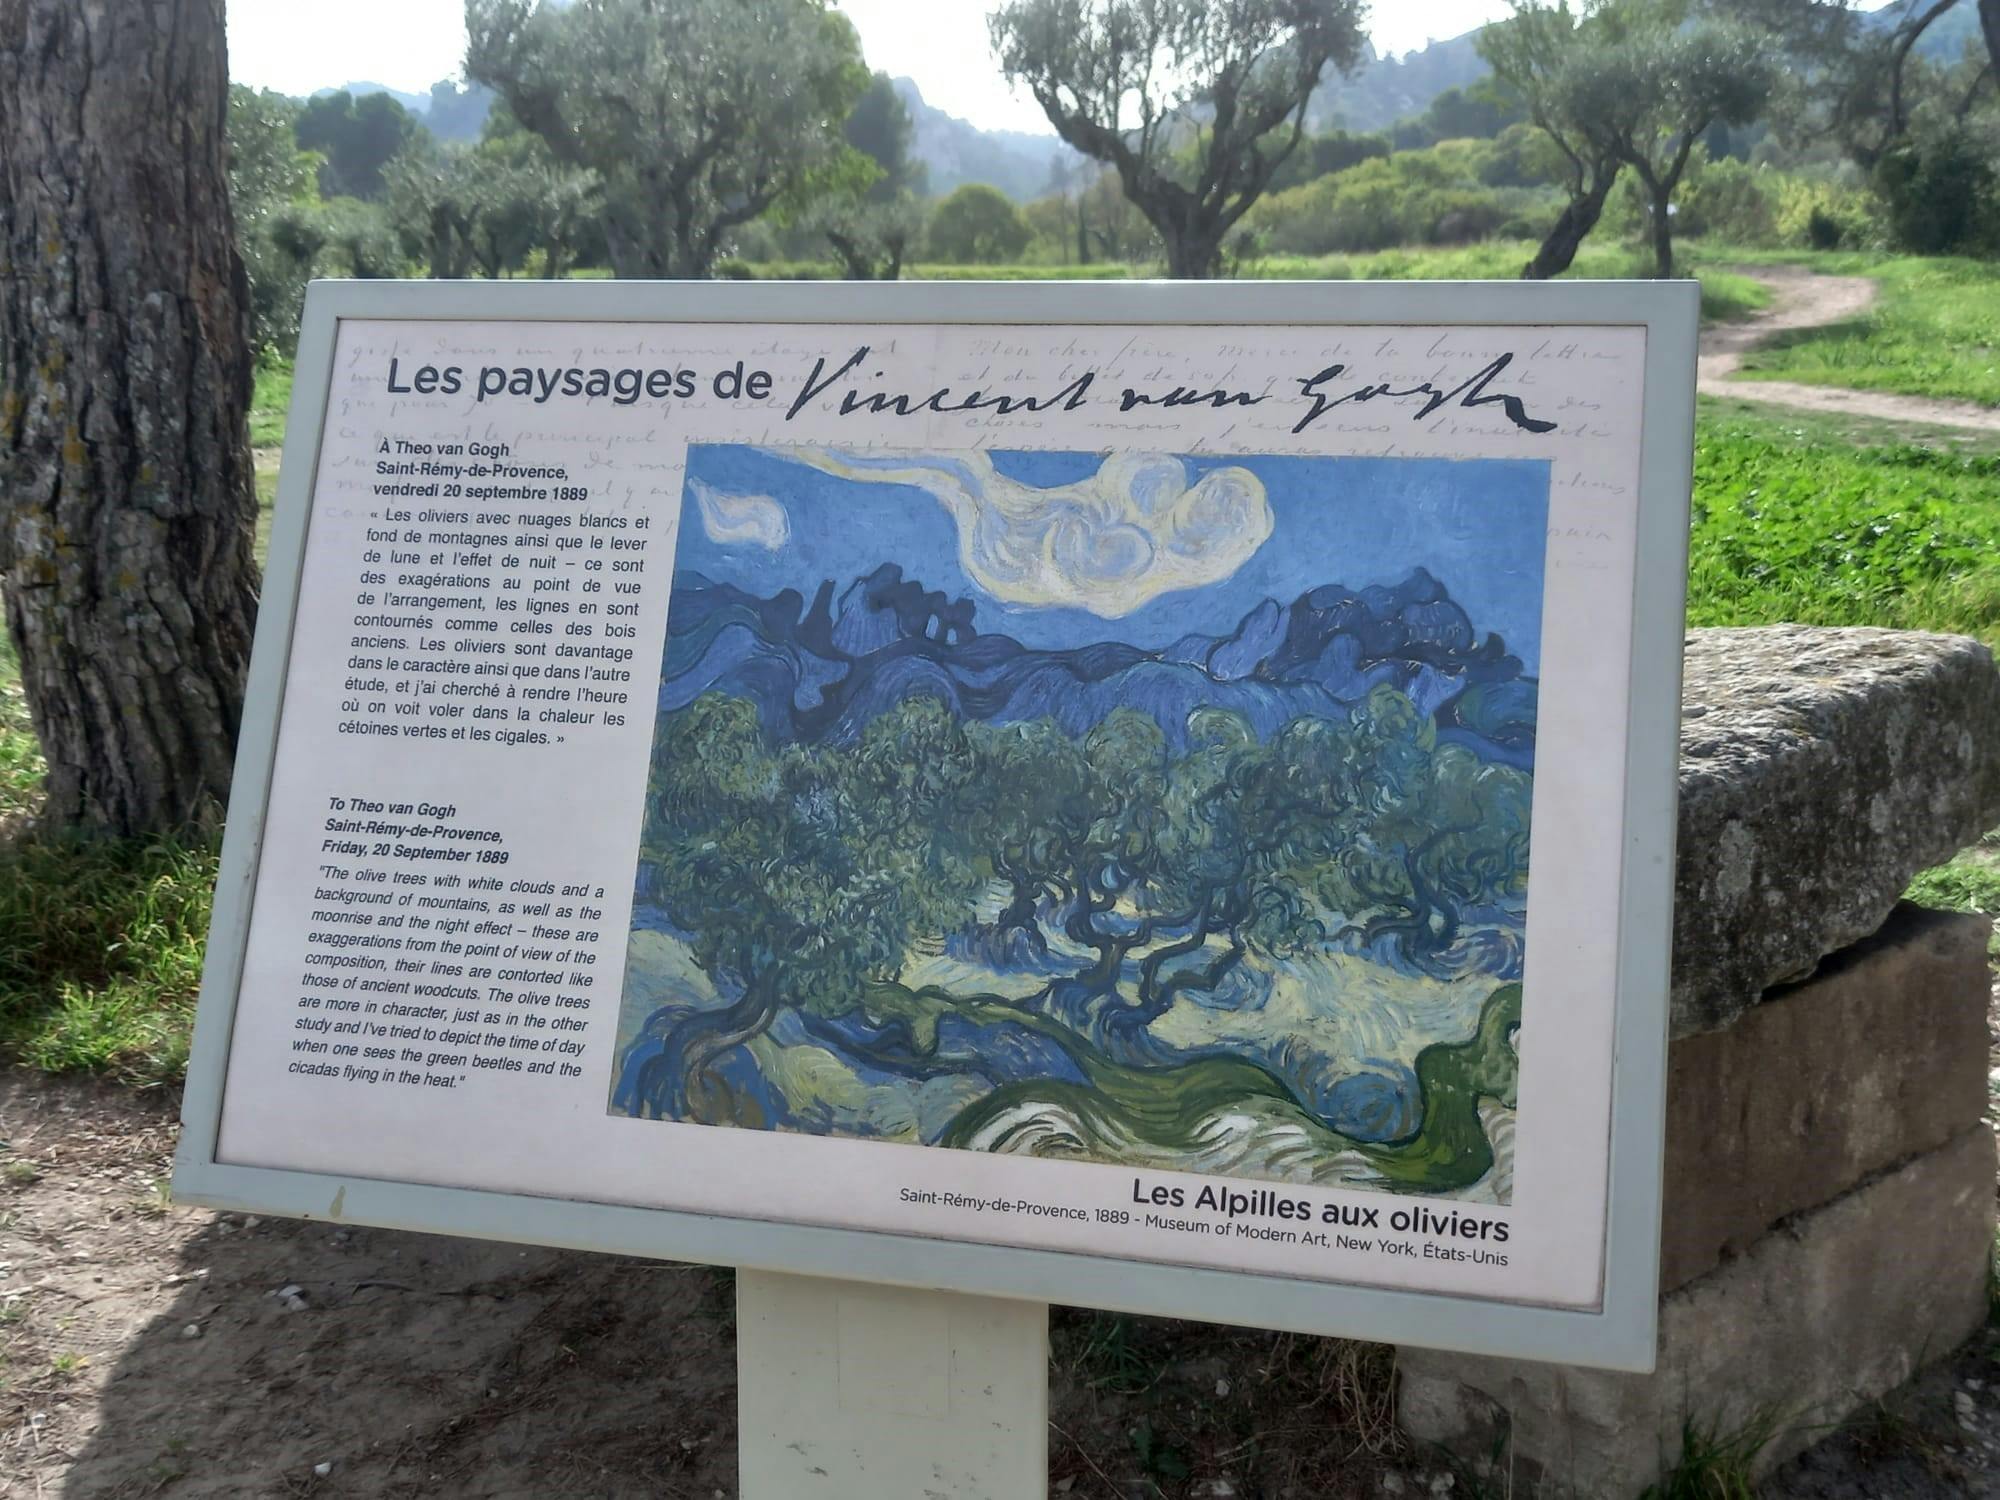 Seguindo os passos de Van Gogh na Provença de Avignon